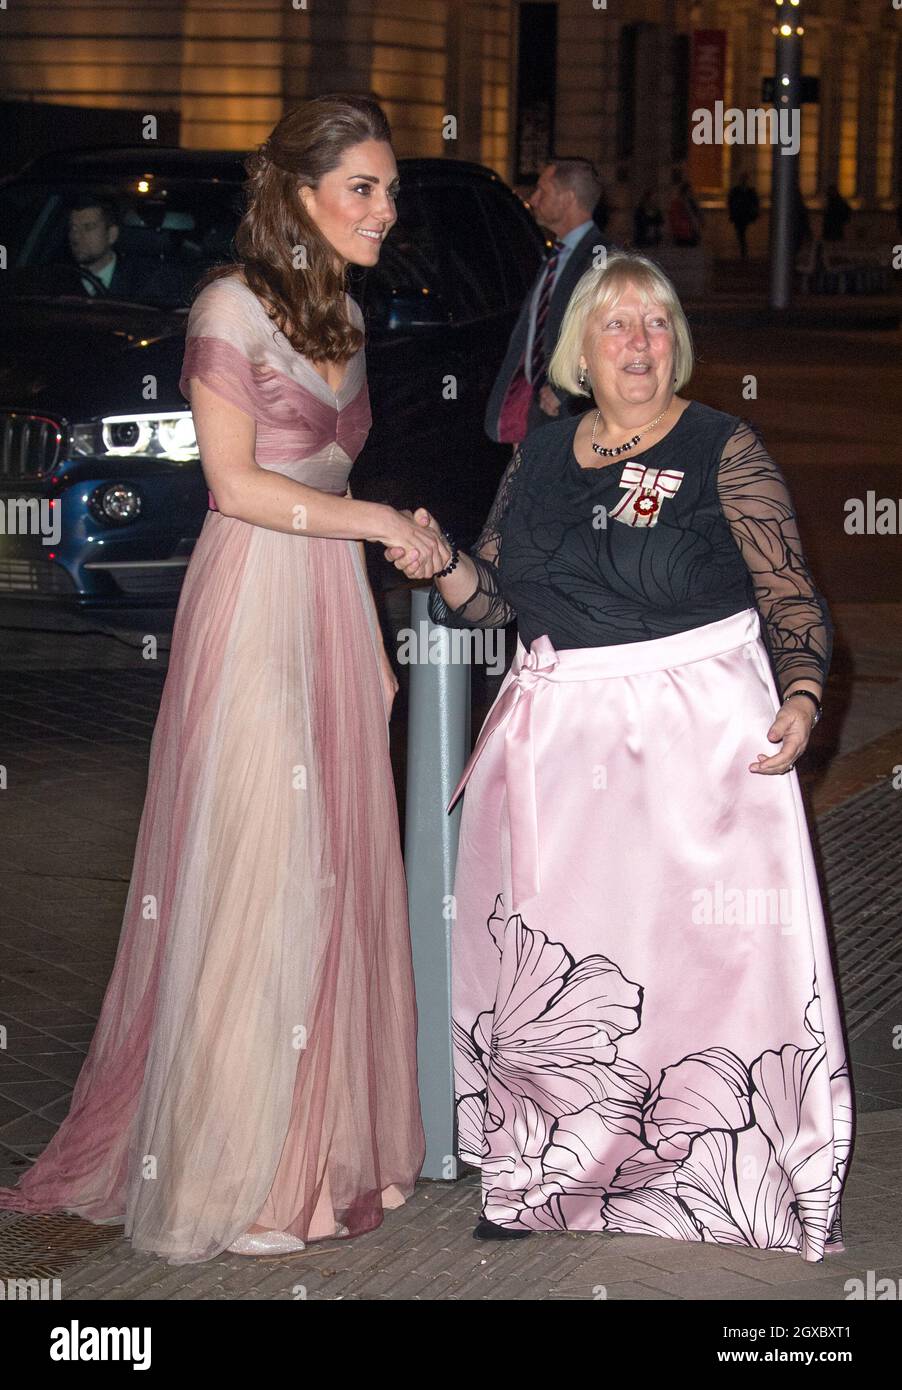 Le Duchess Cambridge, vêtu d'une robe rose et crème de Gucci, participe au dîner de gala Women in Finance 100 au Victoria & Albert Museum de Londres le 13 février 2019. Banque D'Images